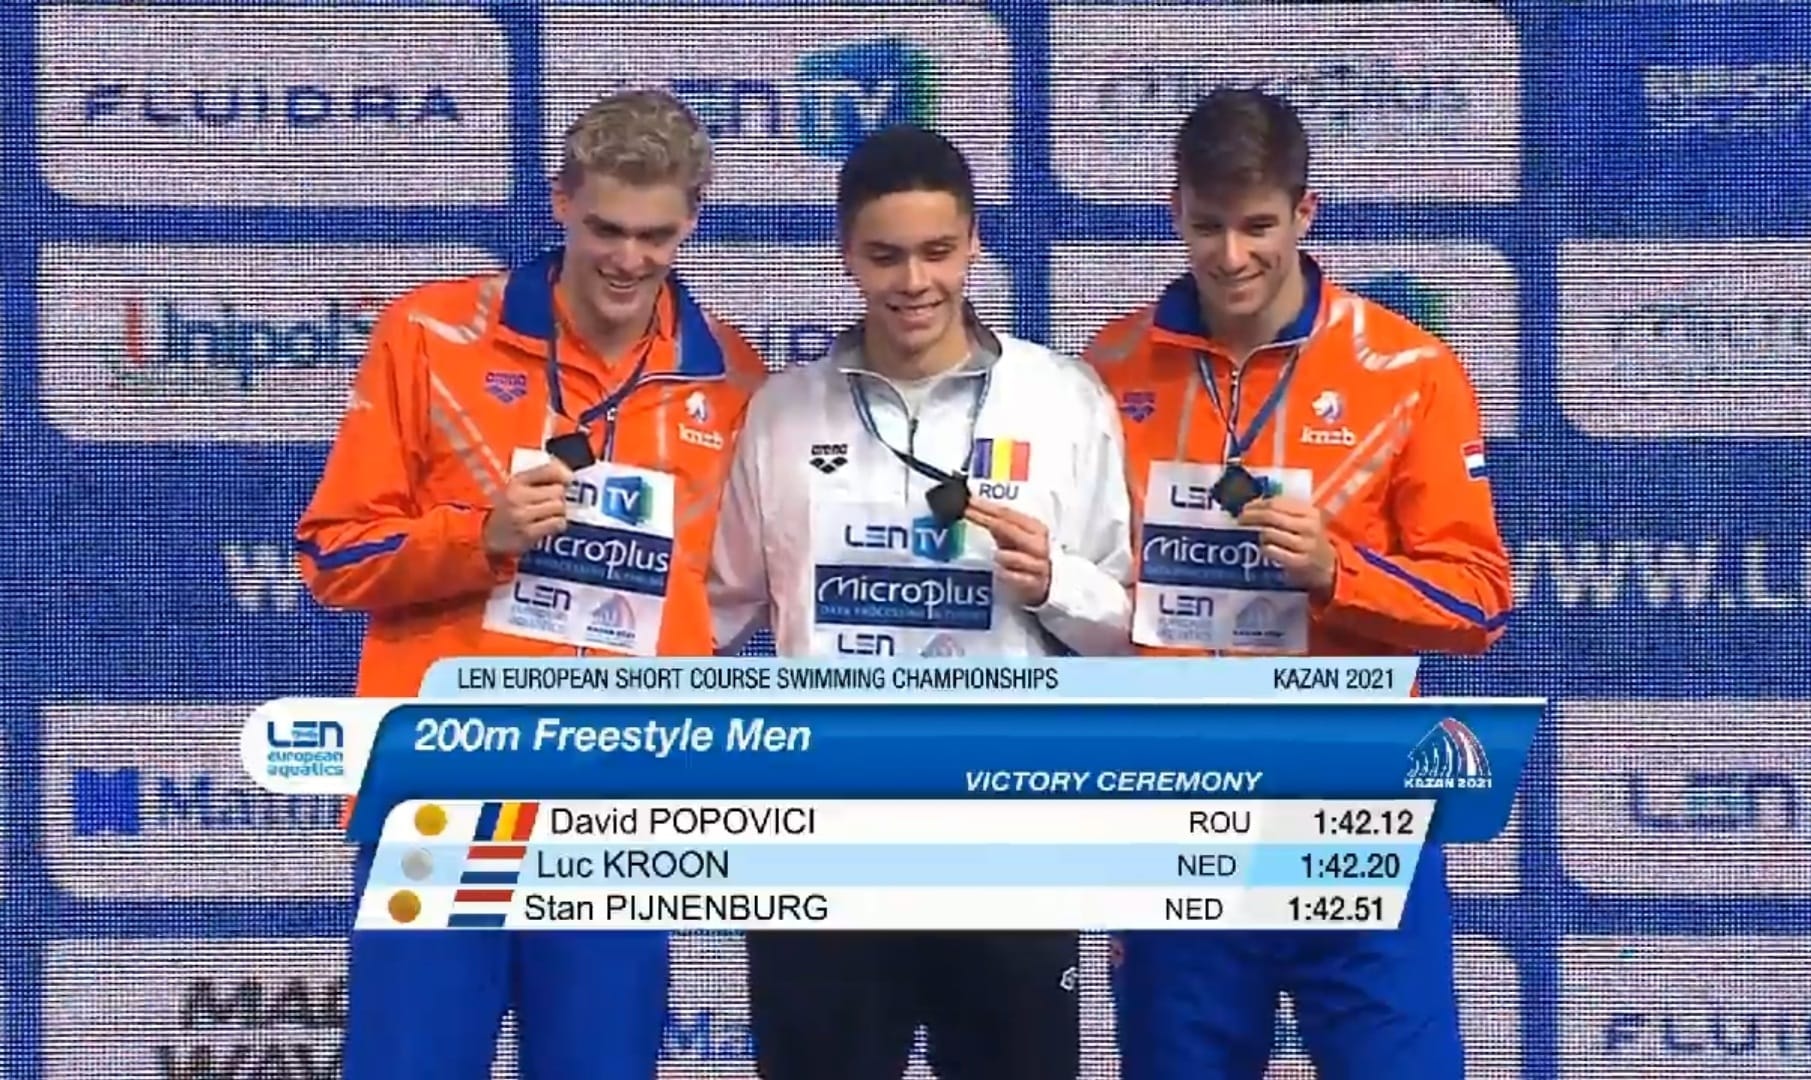 magic Pygmalion Skeptical David Popovici câștigă prima sa medalie la seniori: aur la Europenele de  Înot în bazin scurt de la Kazan! Două medalii și pentru Robert Glință:  argint și bronz - Lead.ro